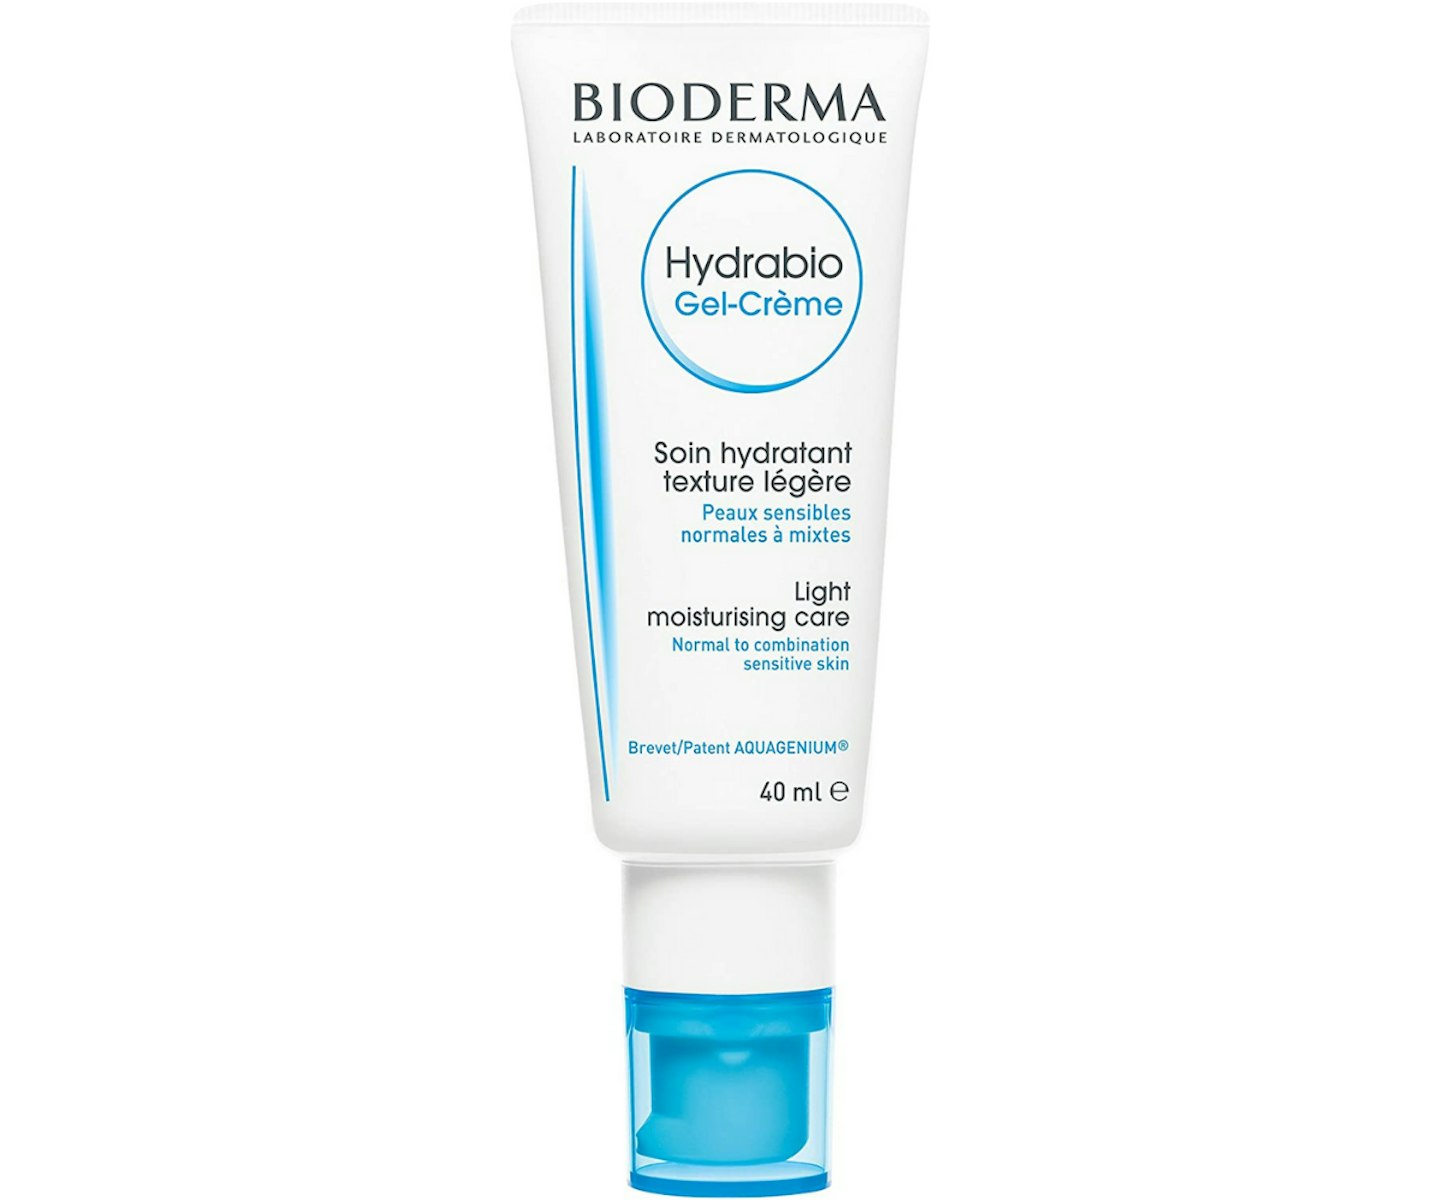 A picture of the Bioderma Hydrabio Gel Cream